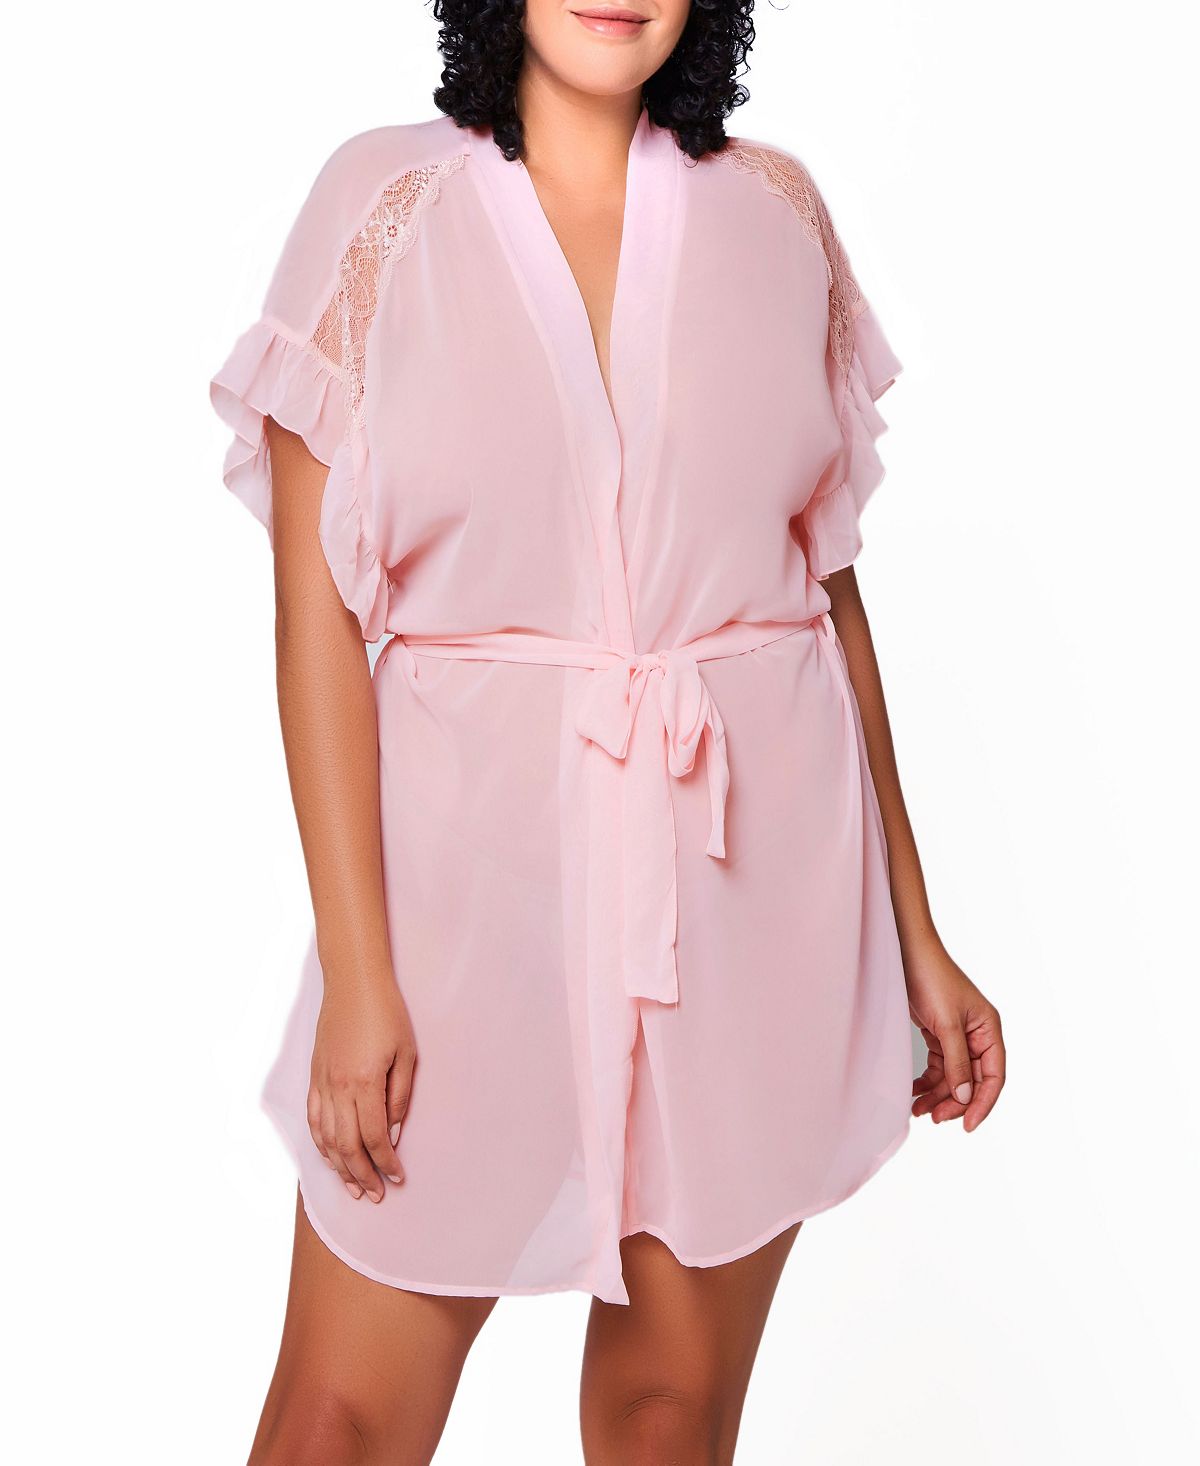 цена Прозрачный халат mia plus size из шифона и кружева iCollection, розовый